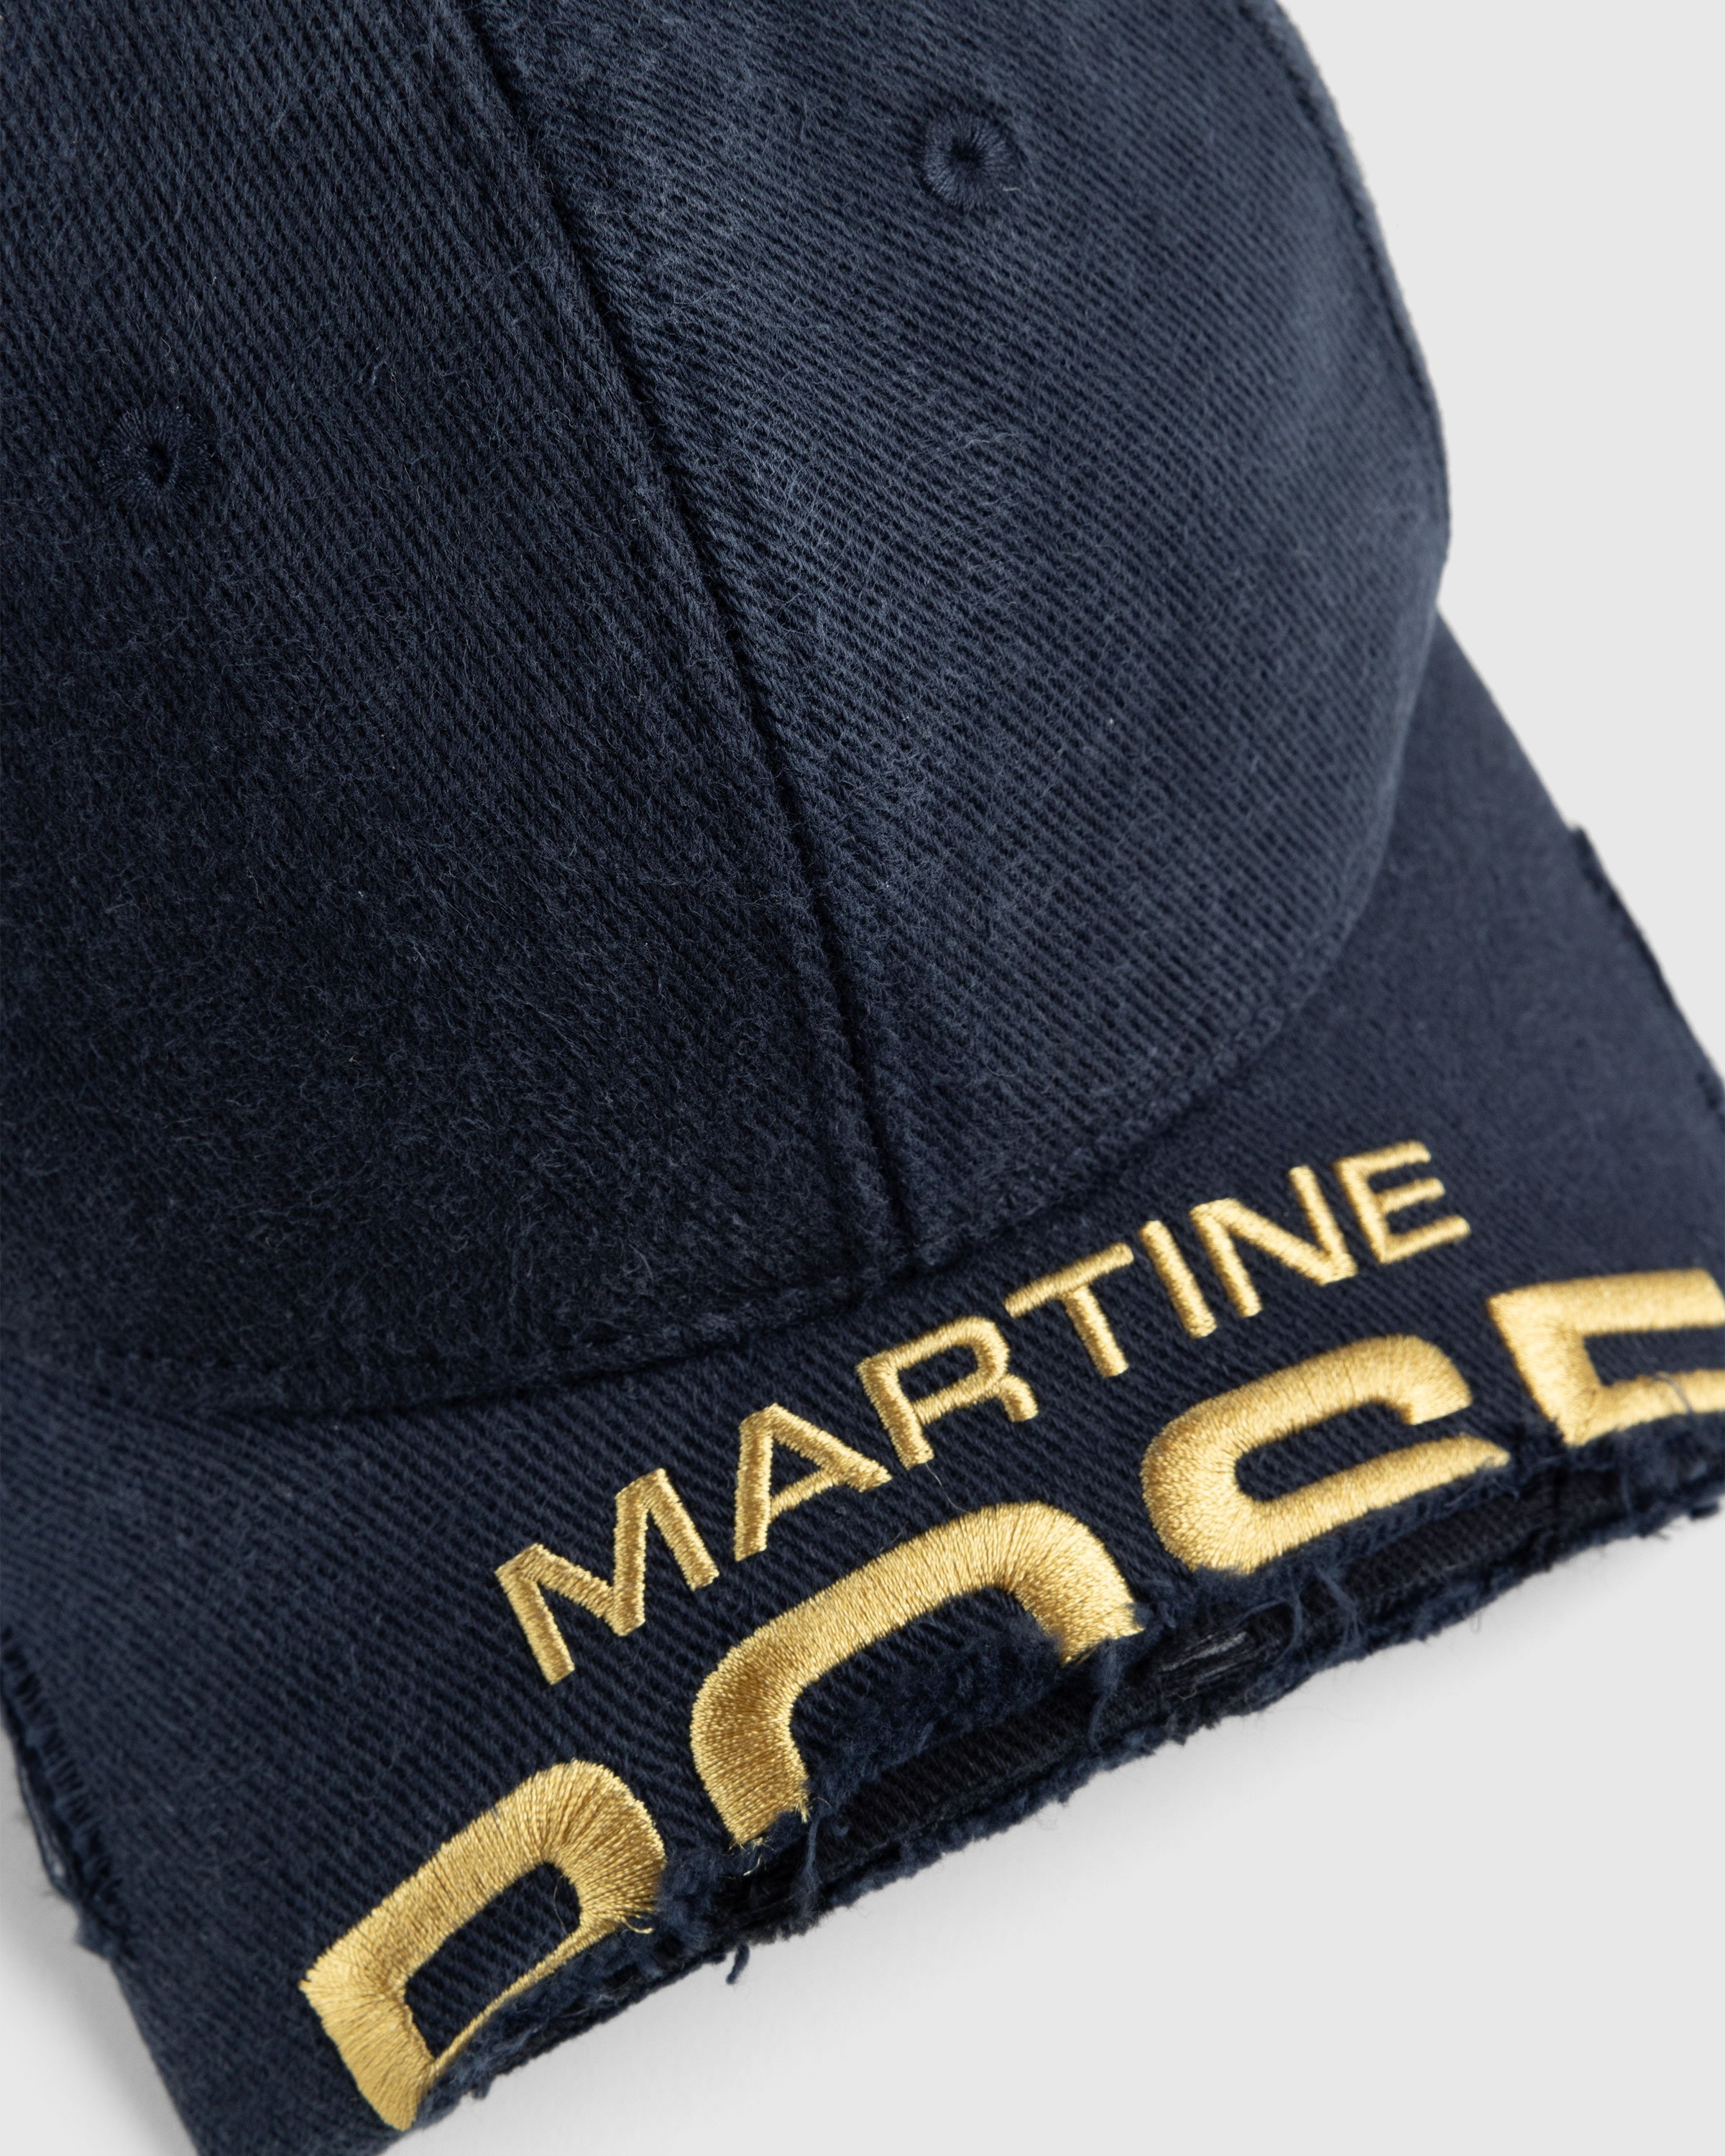 Martine Rose - Cut Peak Cap Navy - Accessories - Blue - Image 5